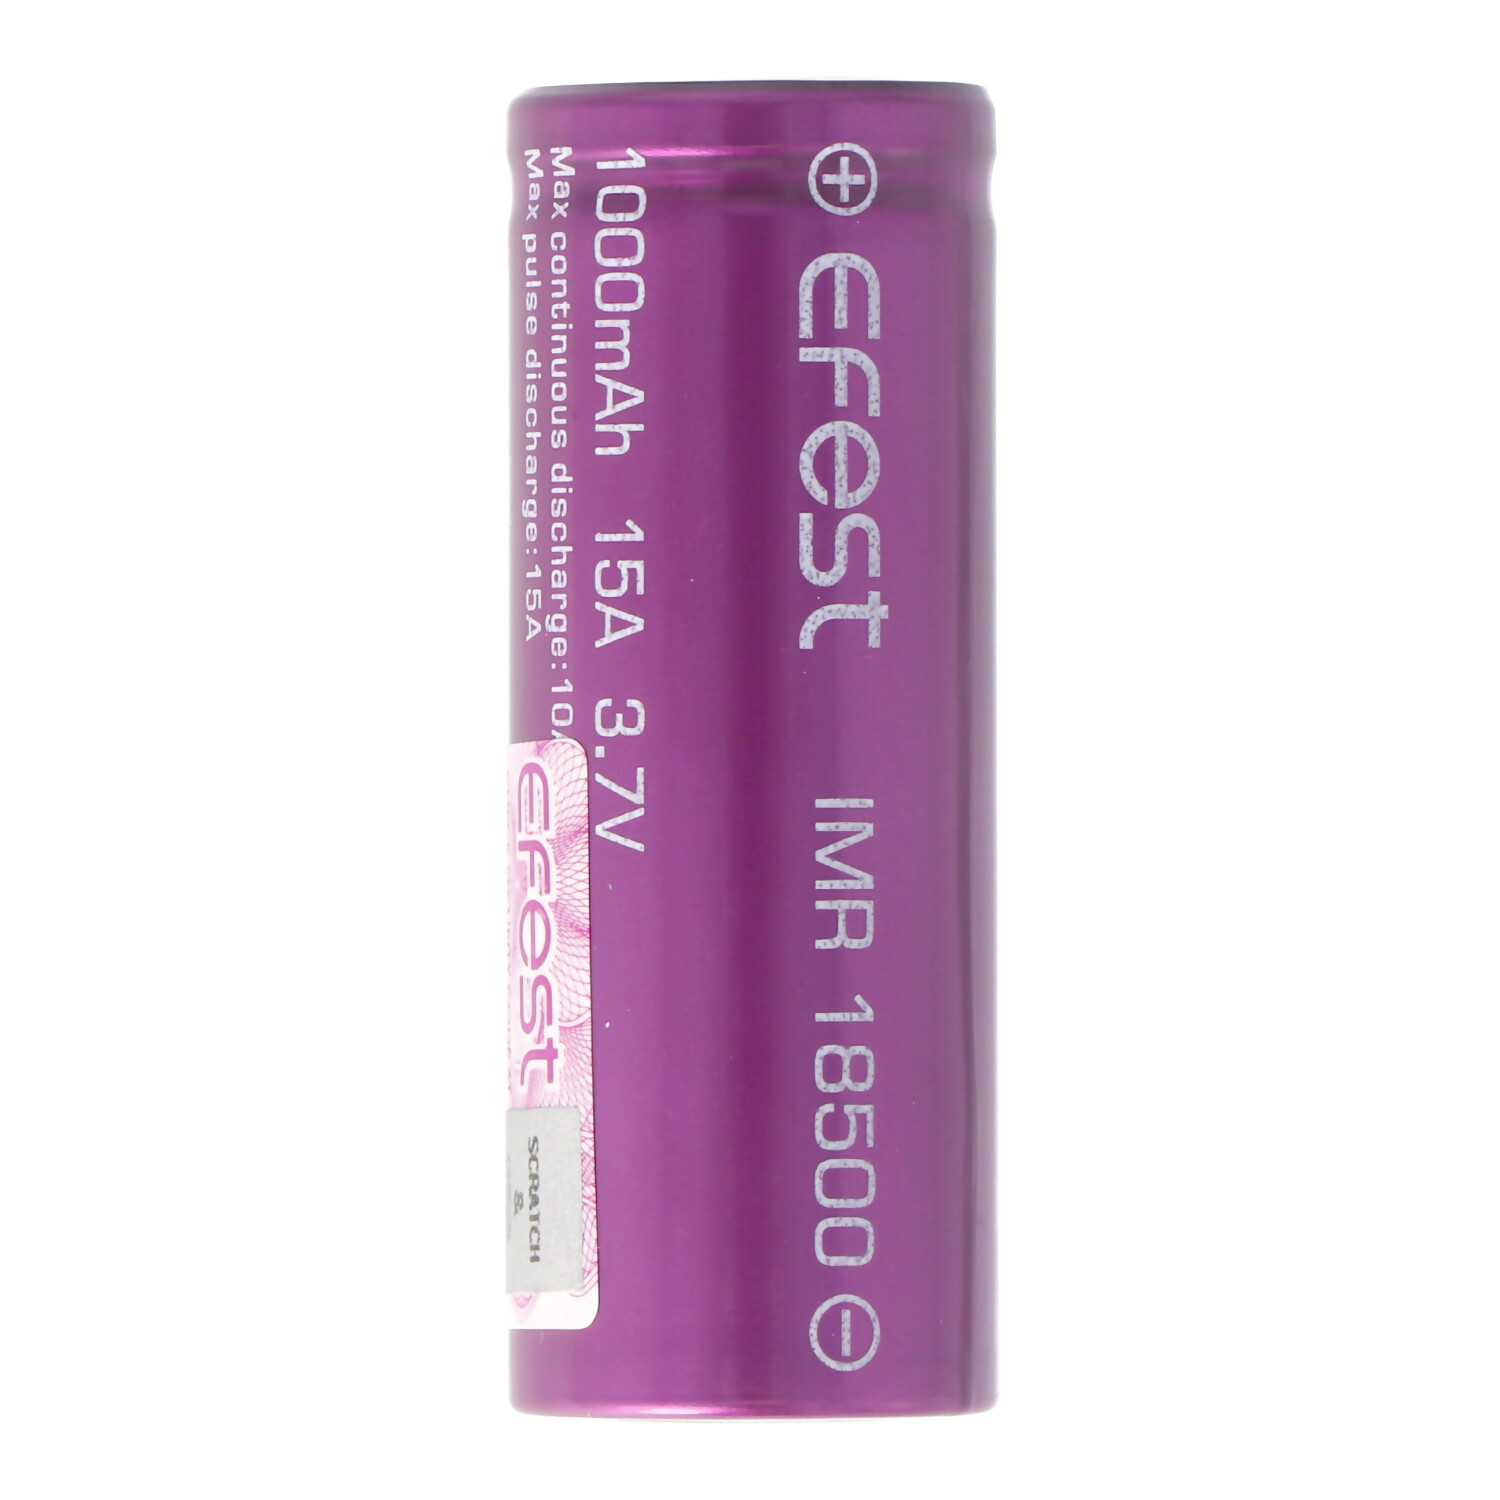 Efest Purple IMR18500 1000mAh 3,7V Pluspol flach, ungeschützt, Abmessungen 49,8x18,3mm